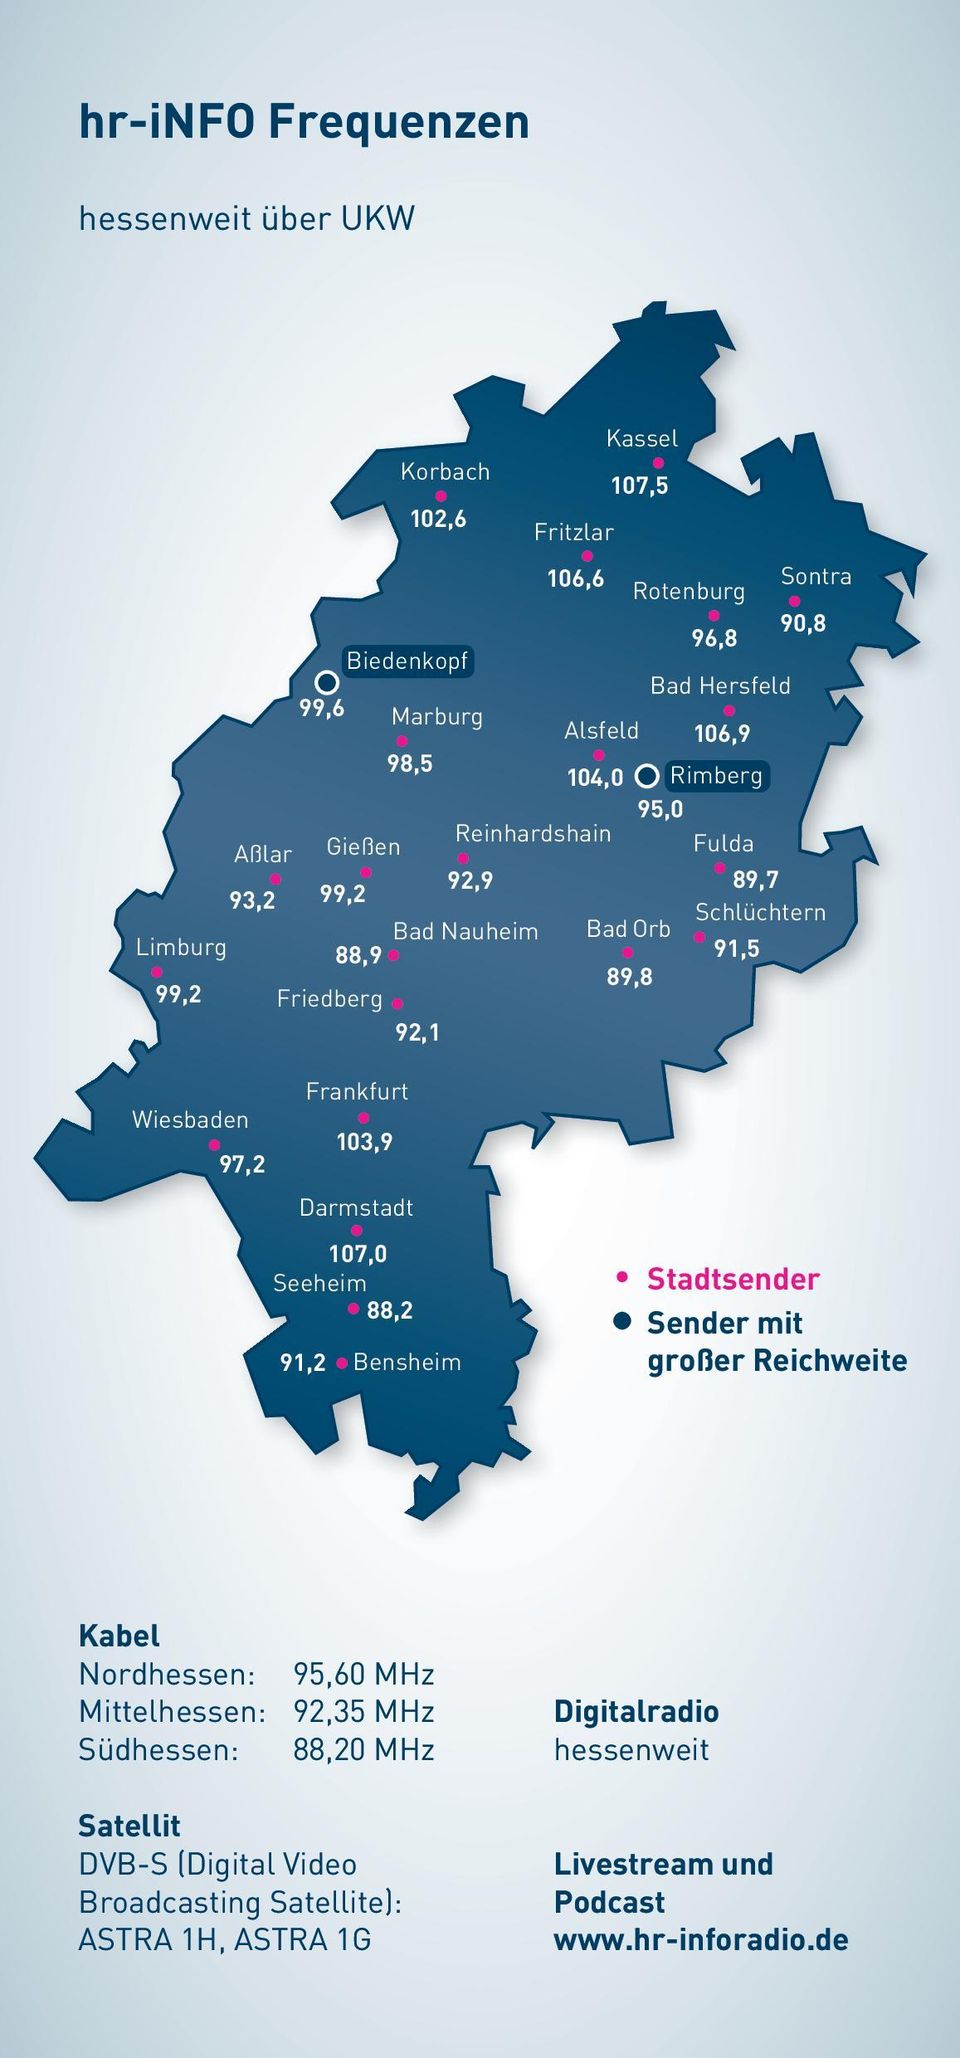 Wiesbaden 97,2 Darmstadt 107,0 Seeheim 88,2 91,2 Frankfurt 103,9 Bensheim Stadtsender Sender mit großer Reichweite Kabel Nordhessen: 95,60 MHz Mittelhessen: